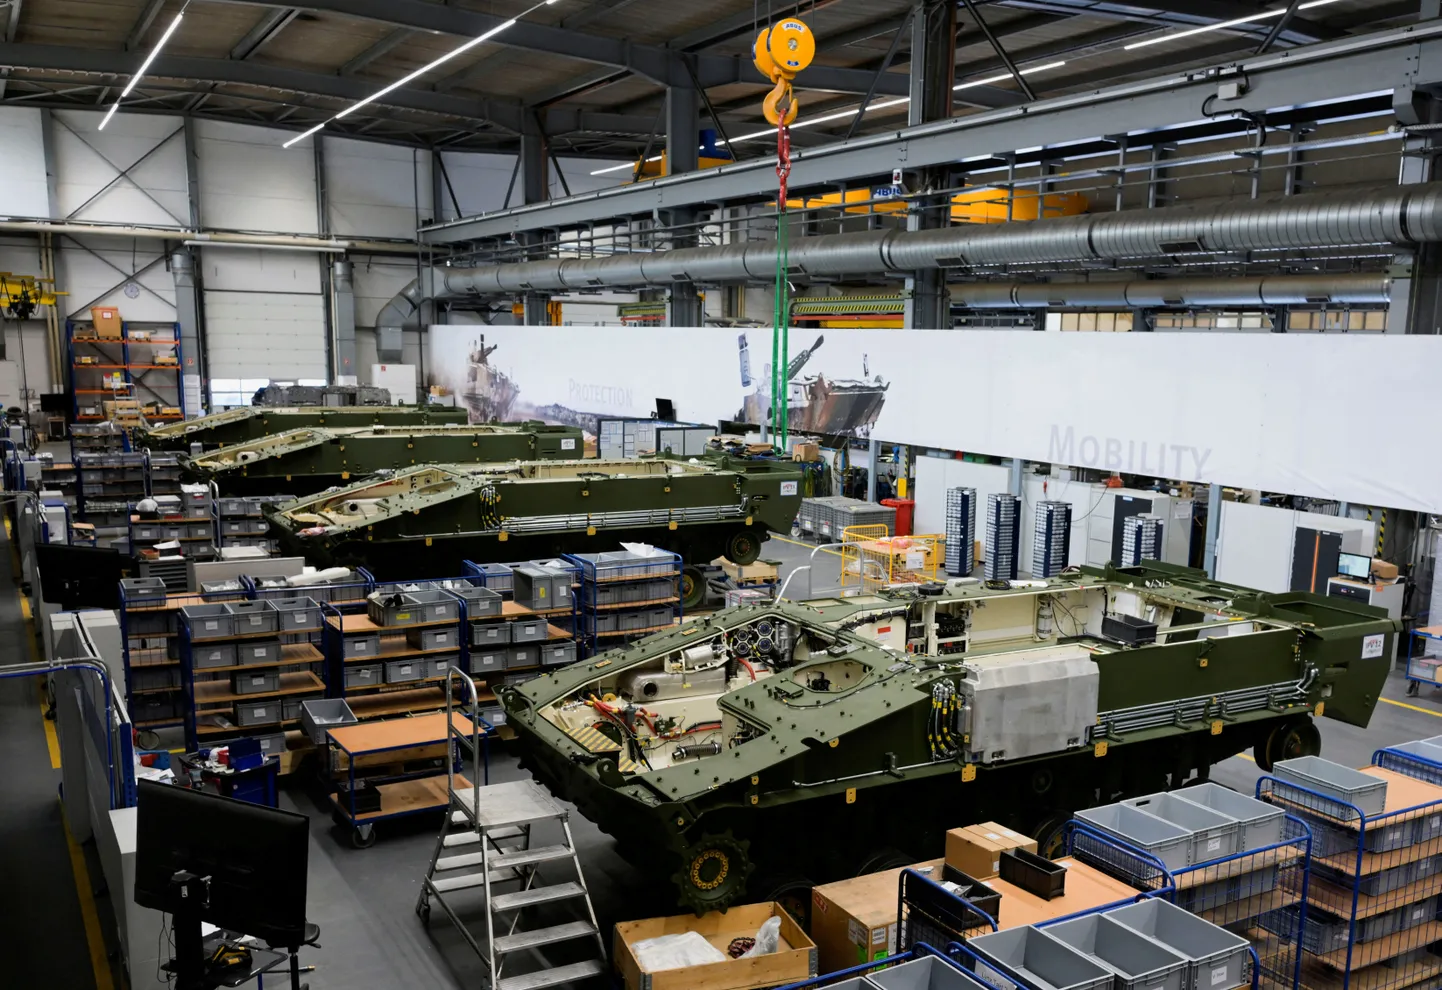 Saksa ettevõtte Rheinmetall soomusmasinate tootmistsehh. Foto on illustratiivne.